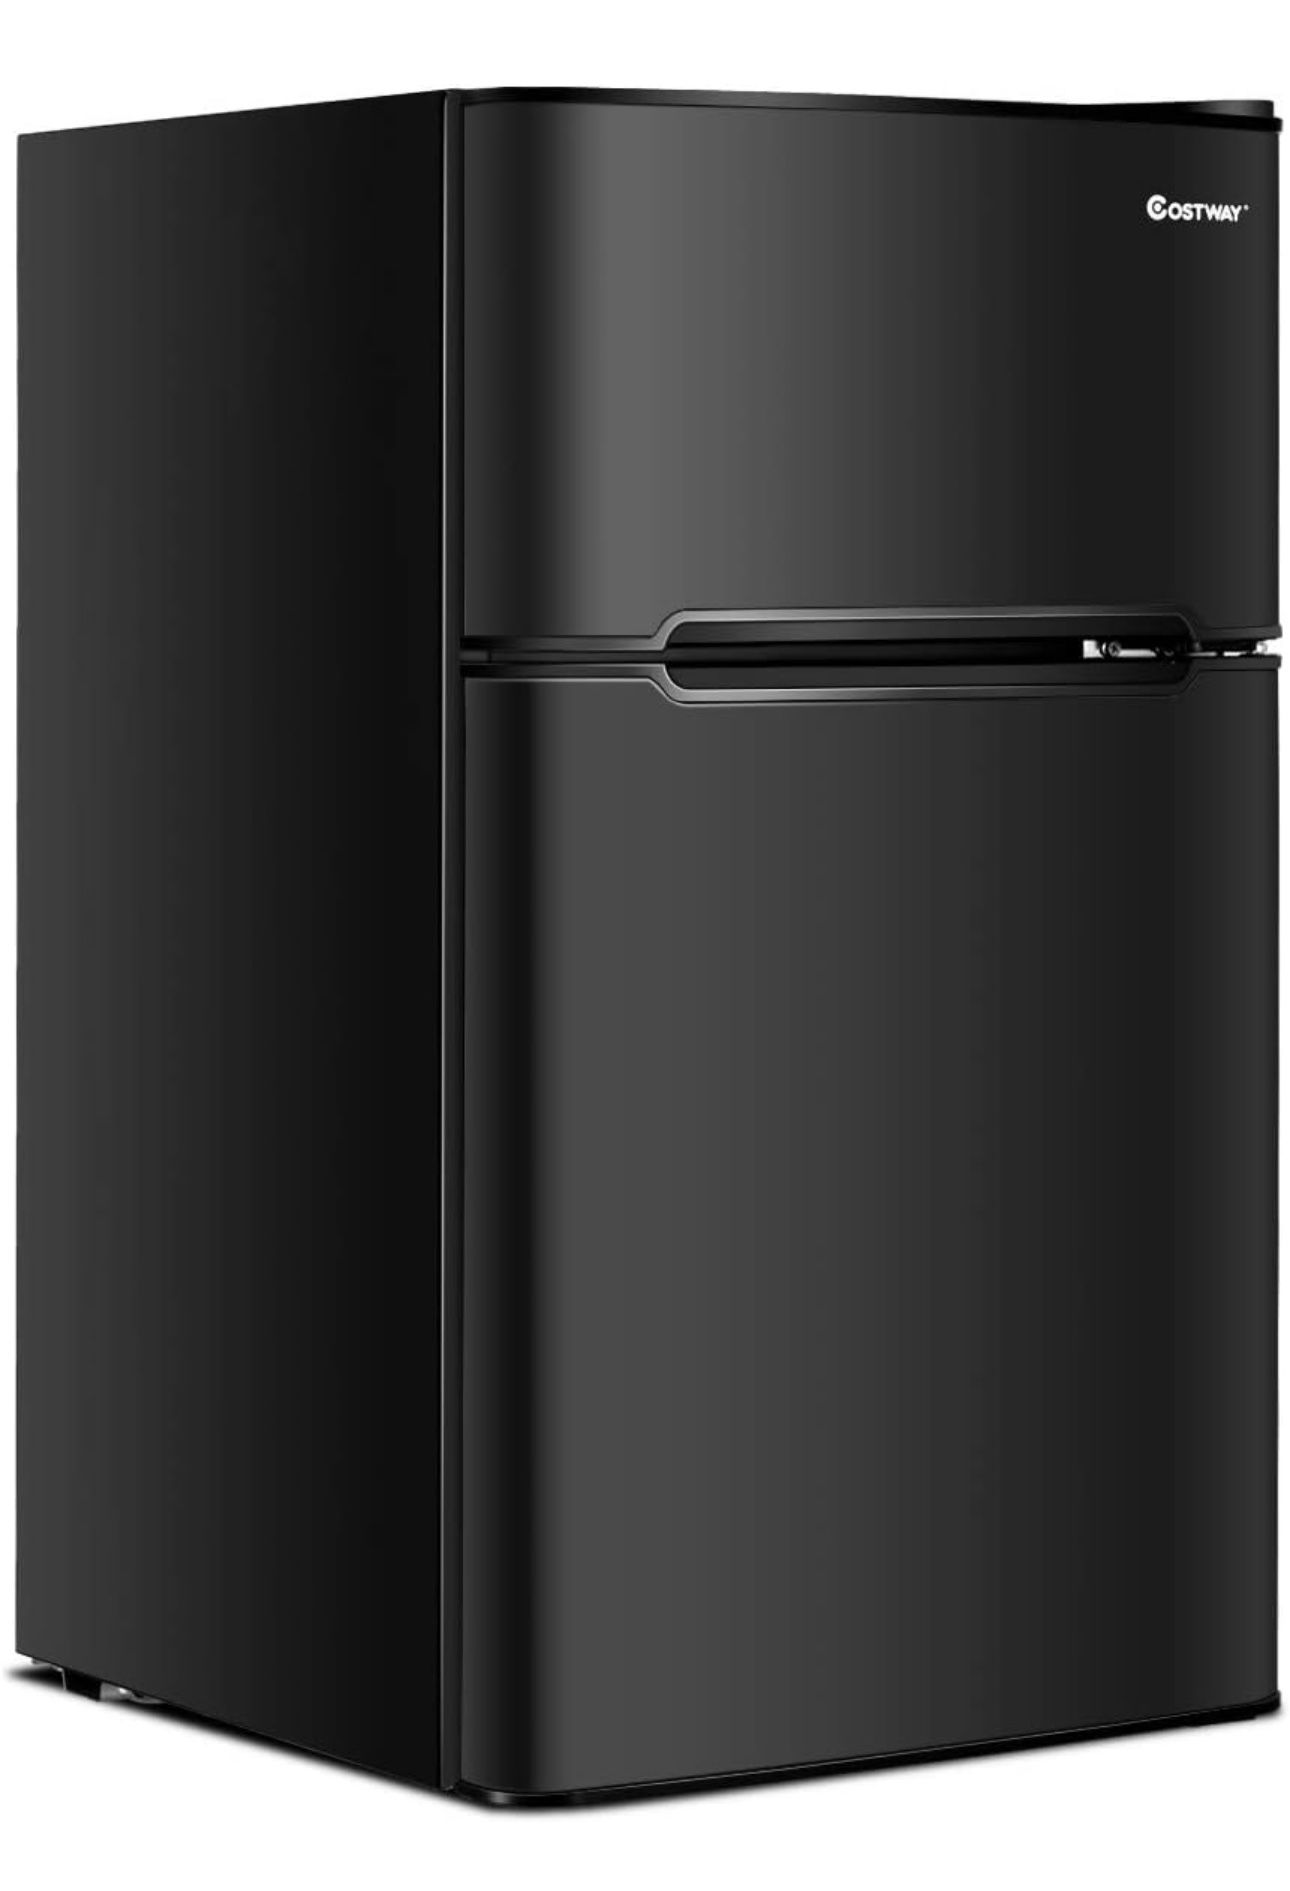 COSTWAY Compact Refrigerator, 3.2 cu ft. Unit 2-Door Mini Freezer Cooler Fridge with Reversible Door, Removable Glass Shelves, Mechanical Control, Rec